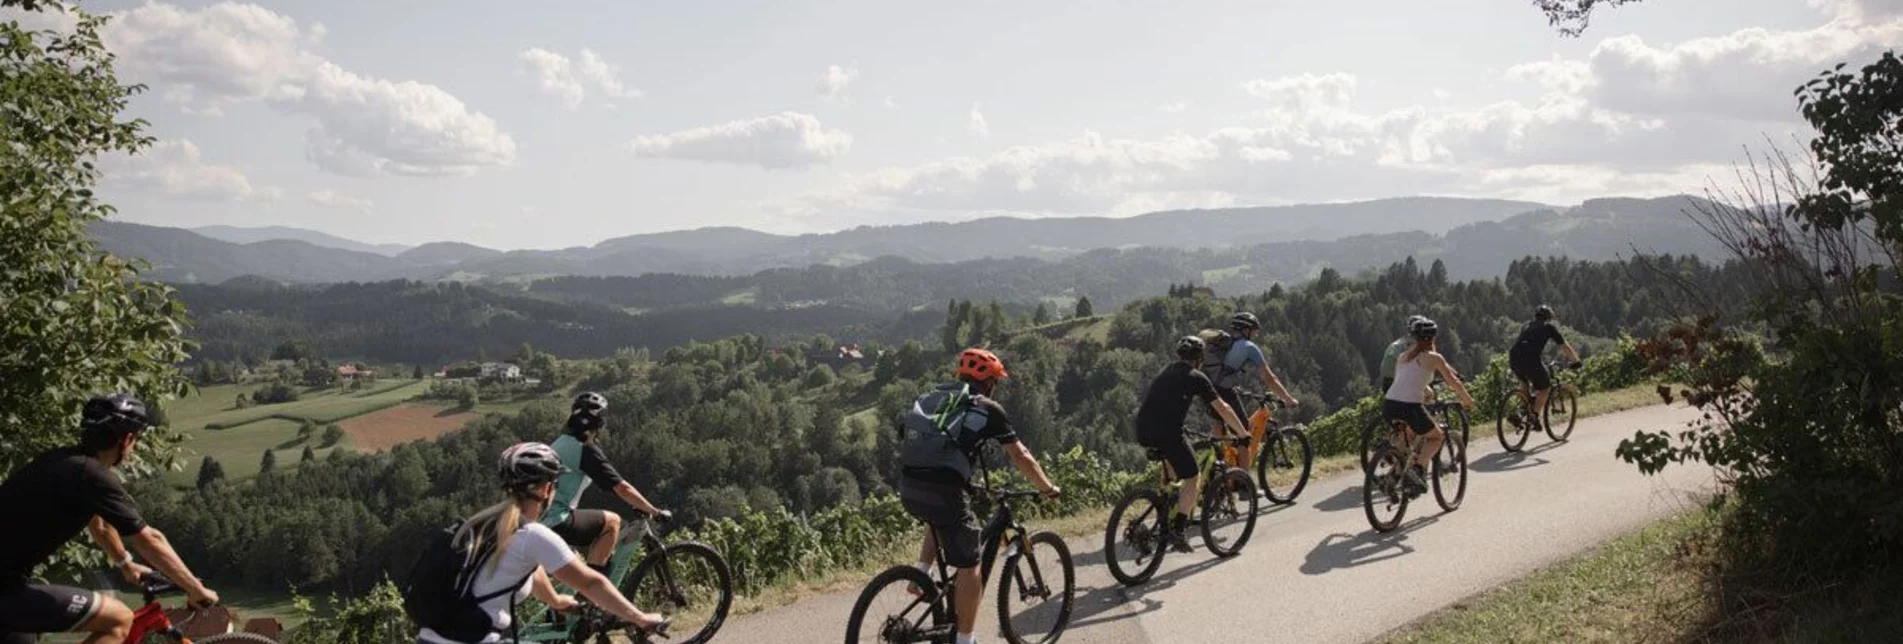 Mountainbike RADELIKAT (Wies) - Biken mit Genuss im Schilcherland - Touren-Impression #1 | © Schilcherland Steiermark